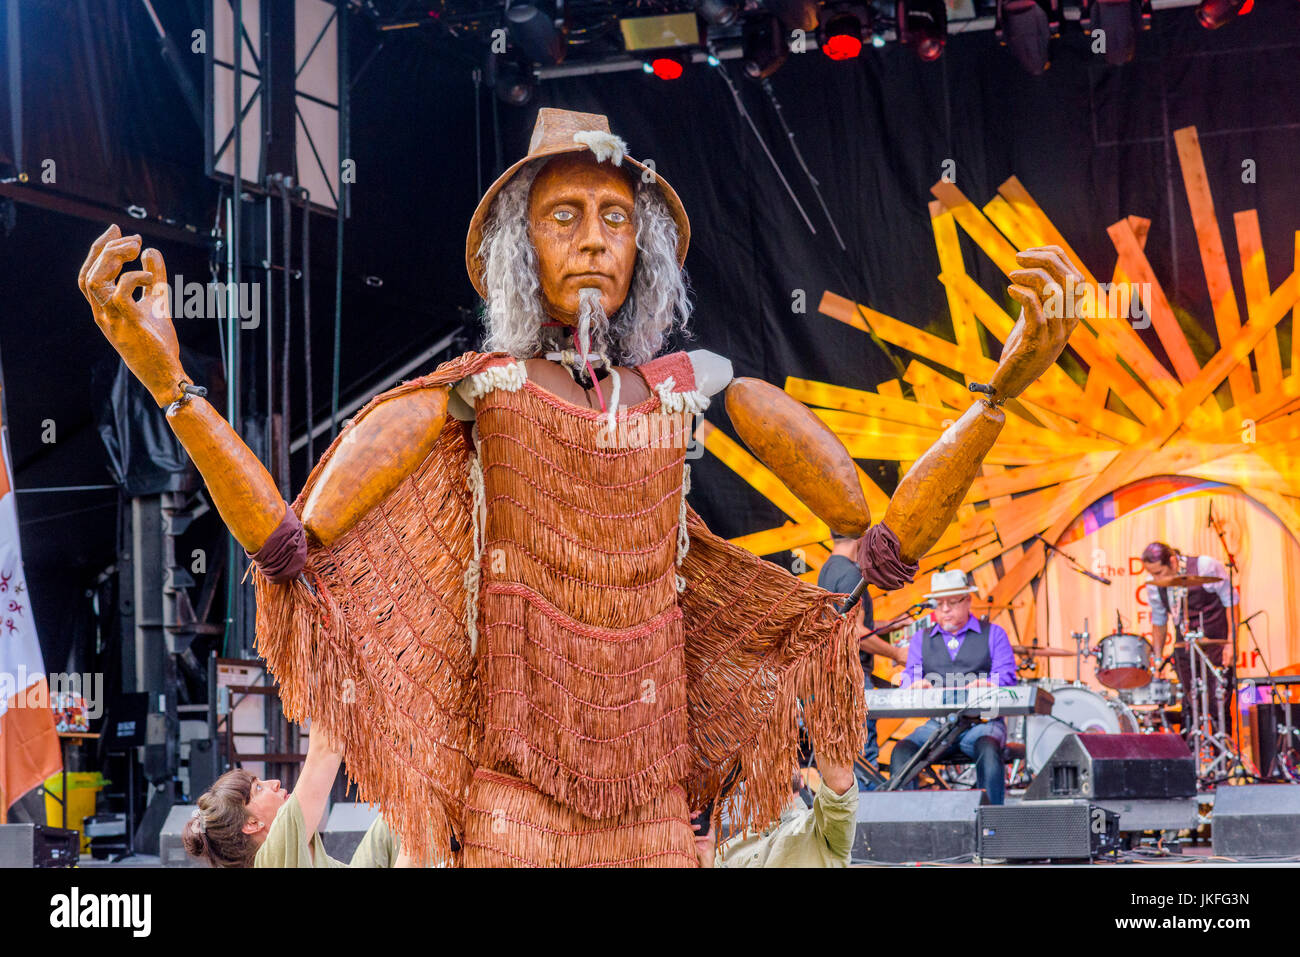 Vancouver, Canada. 22 juillet, 2017. La première bobine mortel Bienvenue Hych'ka, Giant puppet Salish de la côte apparaît au tambour est appelant Festival, Canada 150 + event, Larwill Park, Vancouver, Colombie-Britannique, Canada. Crédit : Michael Wheatley/Alamy Live News Banque D'Images